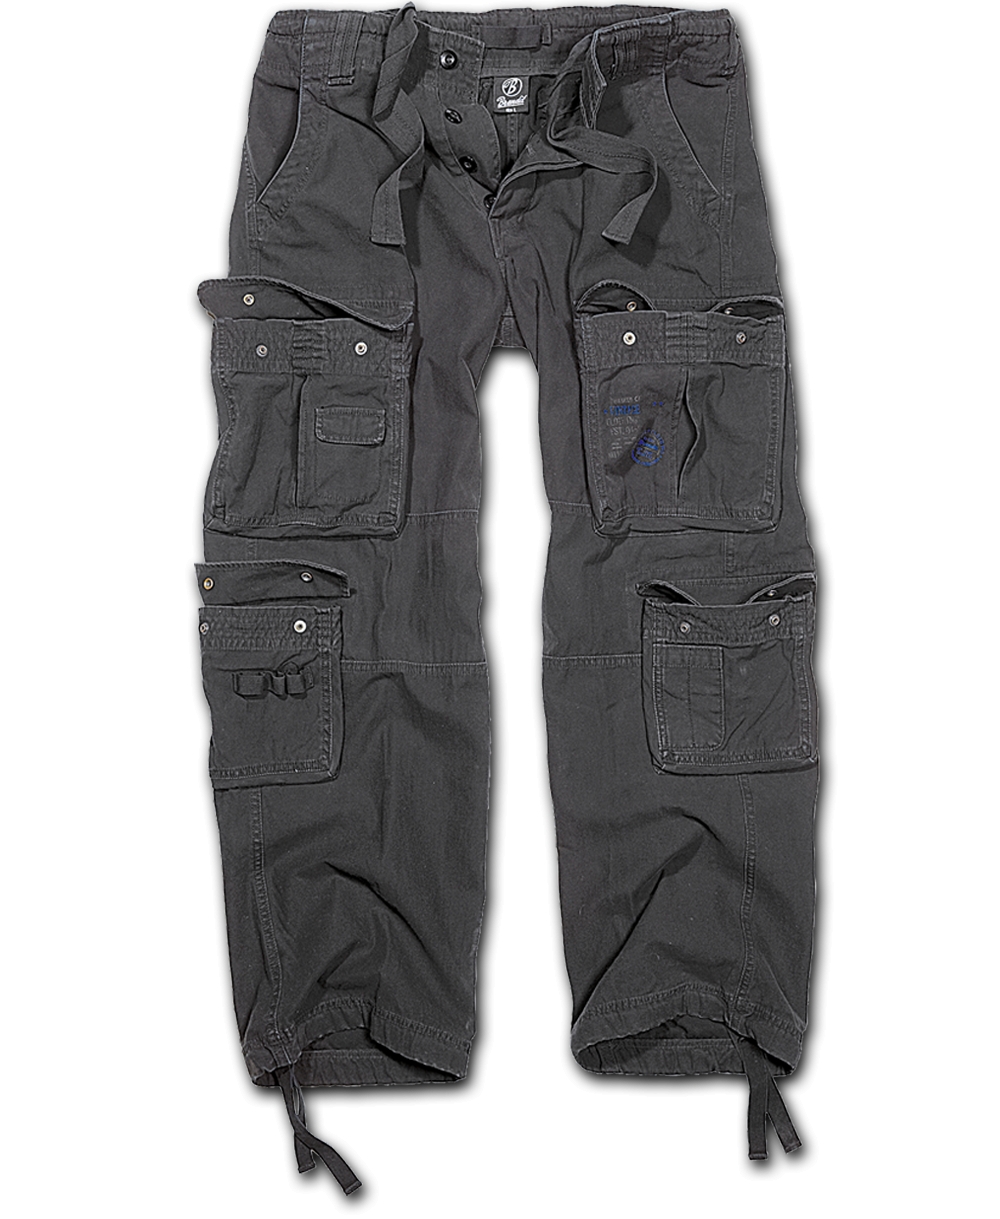 Kalhoty Brandit Pure Vintage - černé, 5XL